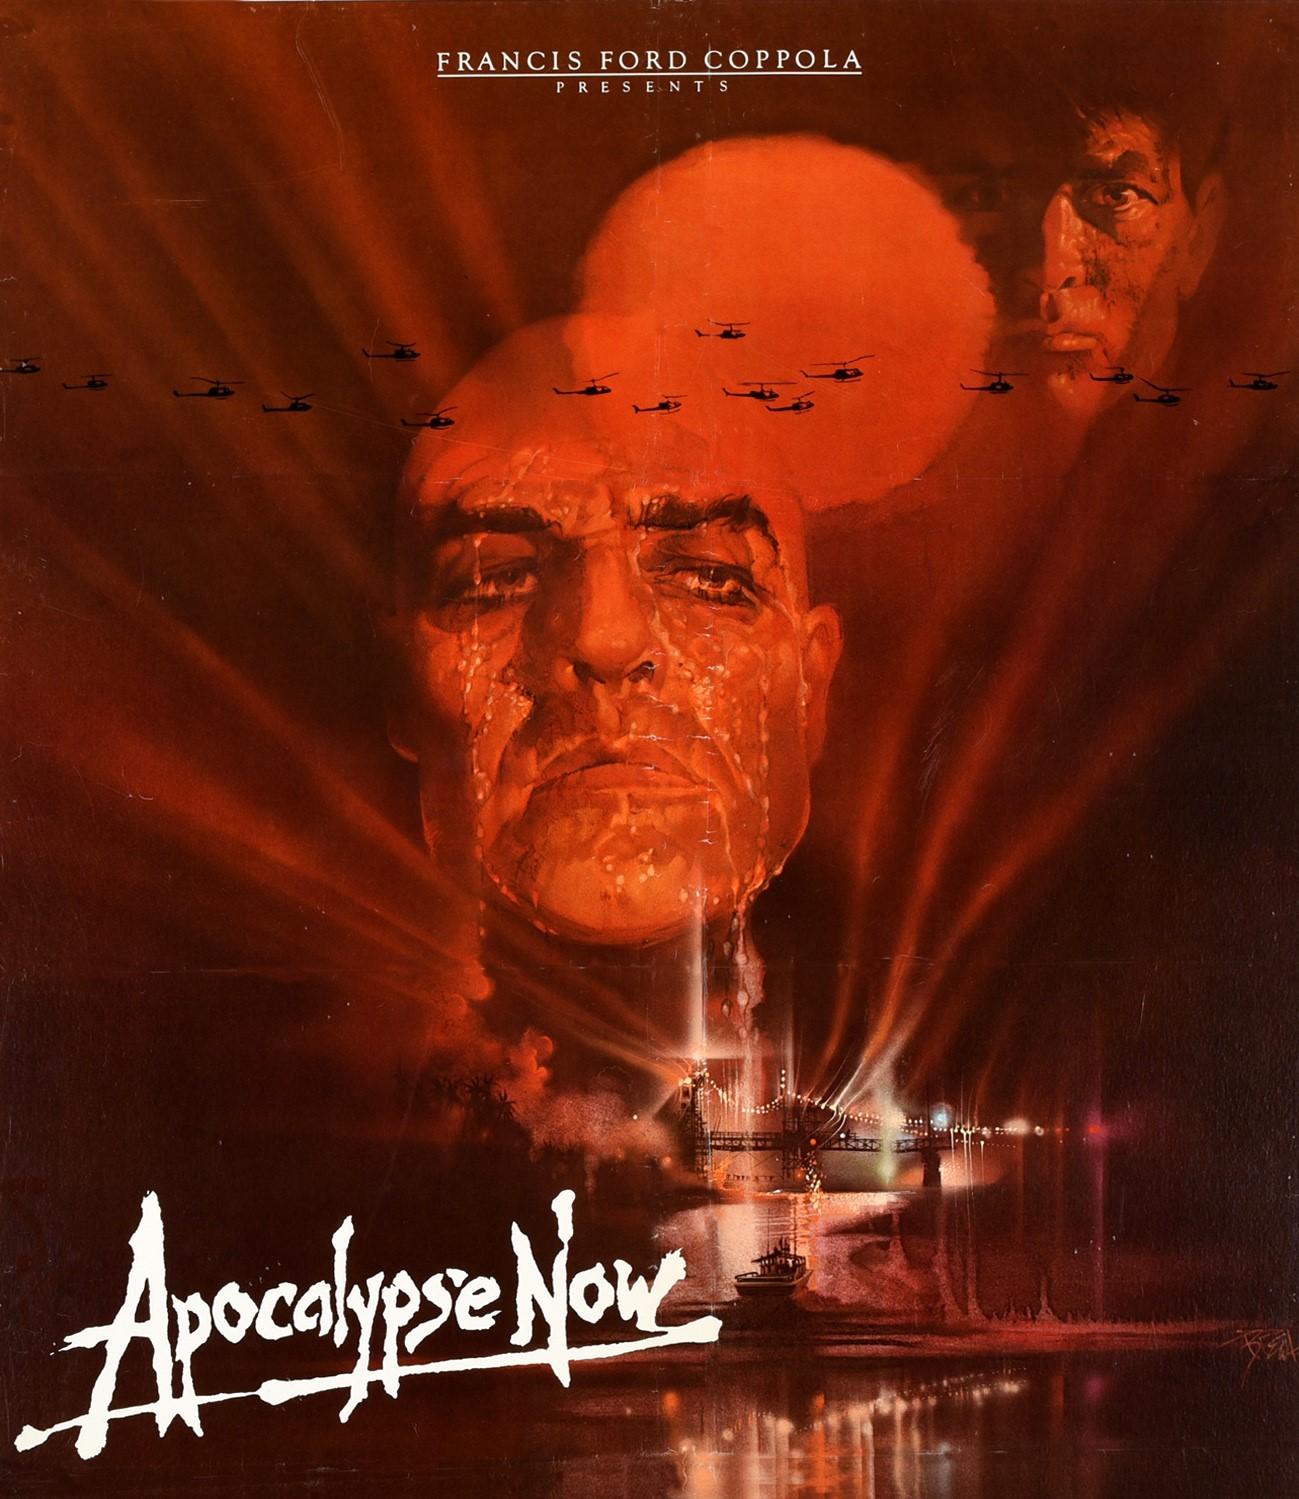 Originales altes Filmplakat für den Film Apocalypse Now von Francis Ford Coppola, der während des Vietnamkriegs spielt, mit Martin Sheen, Marlon Brando und Robert Duvall in den Hauptrollen. Klassisches Bild des amerikanischen Illustrators Bob Peak